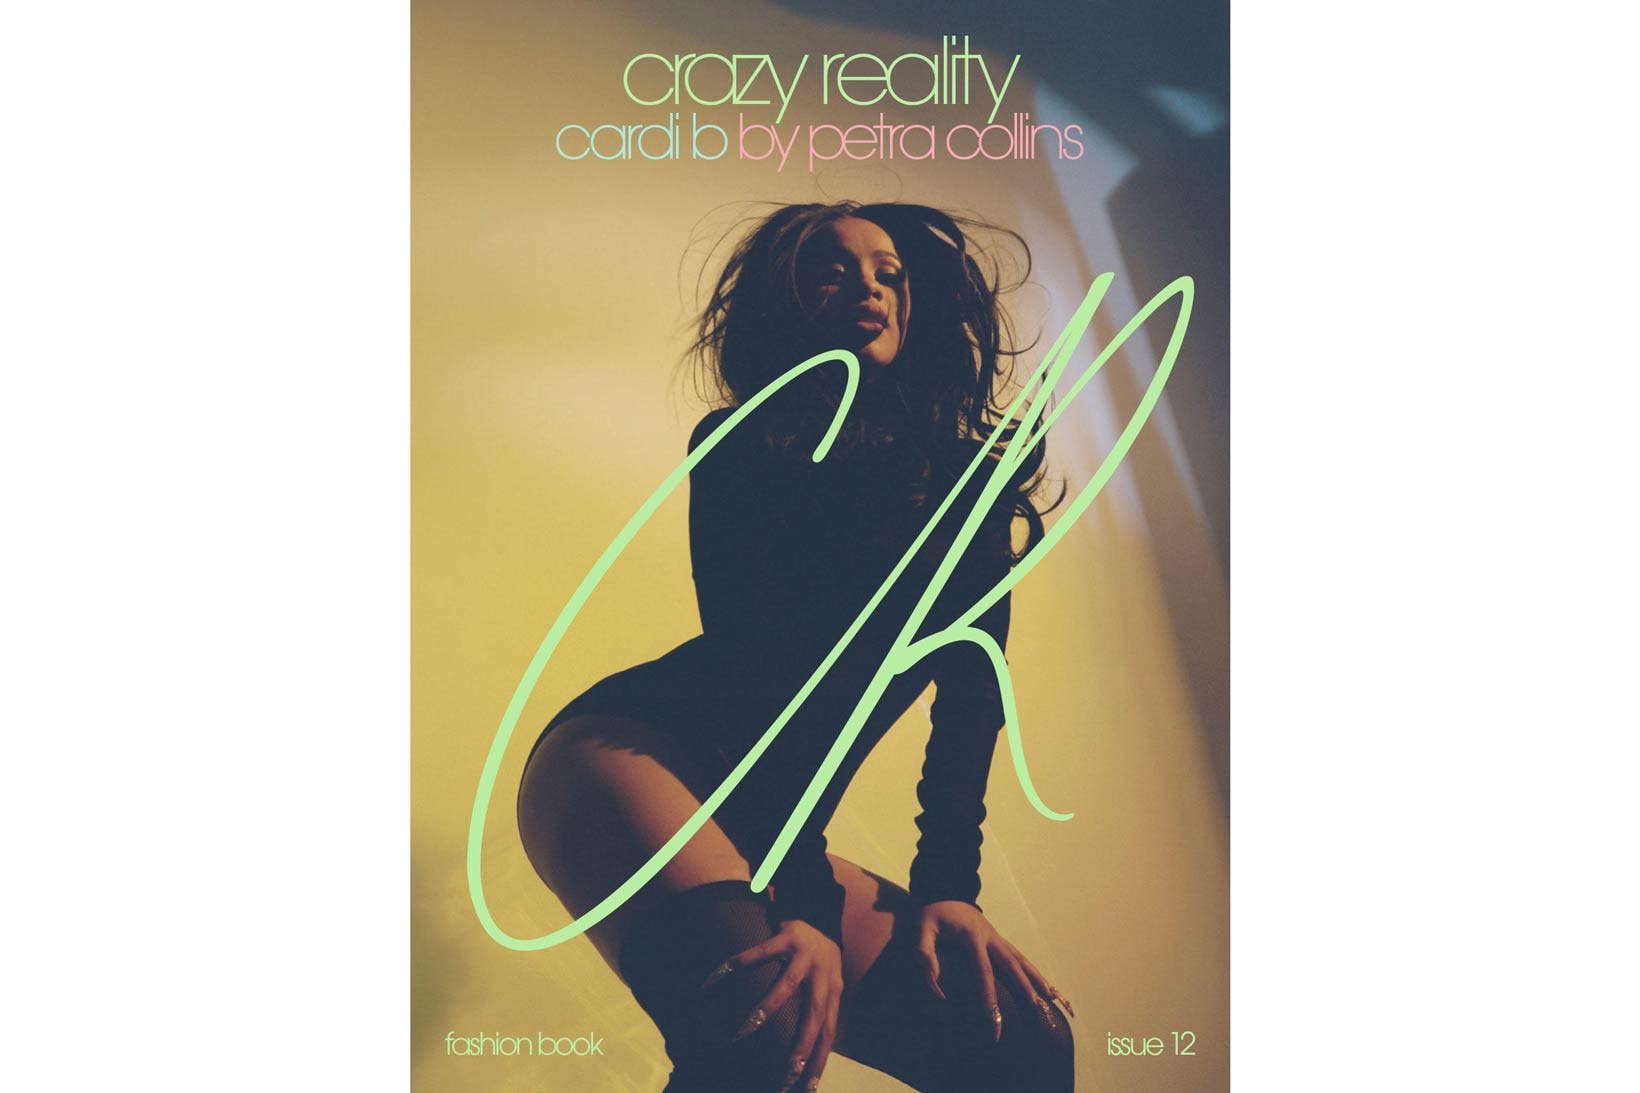 Cardi B Zendaya CR Fashion Book March 2018 Issue 12